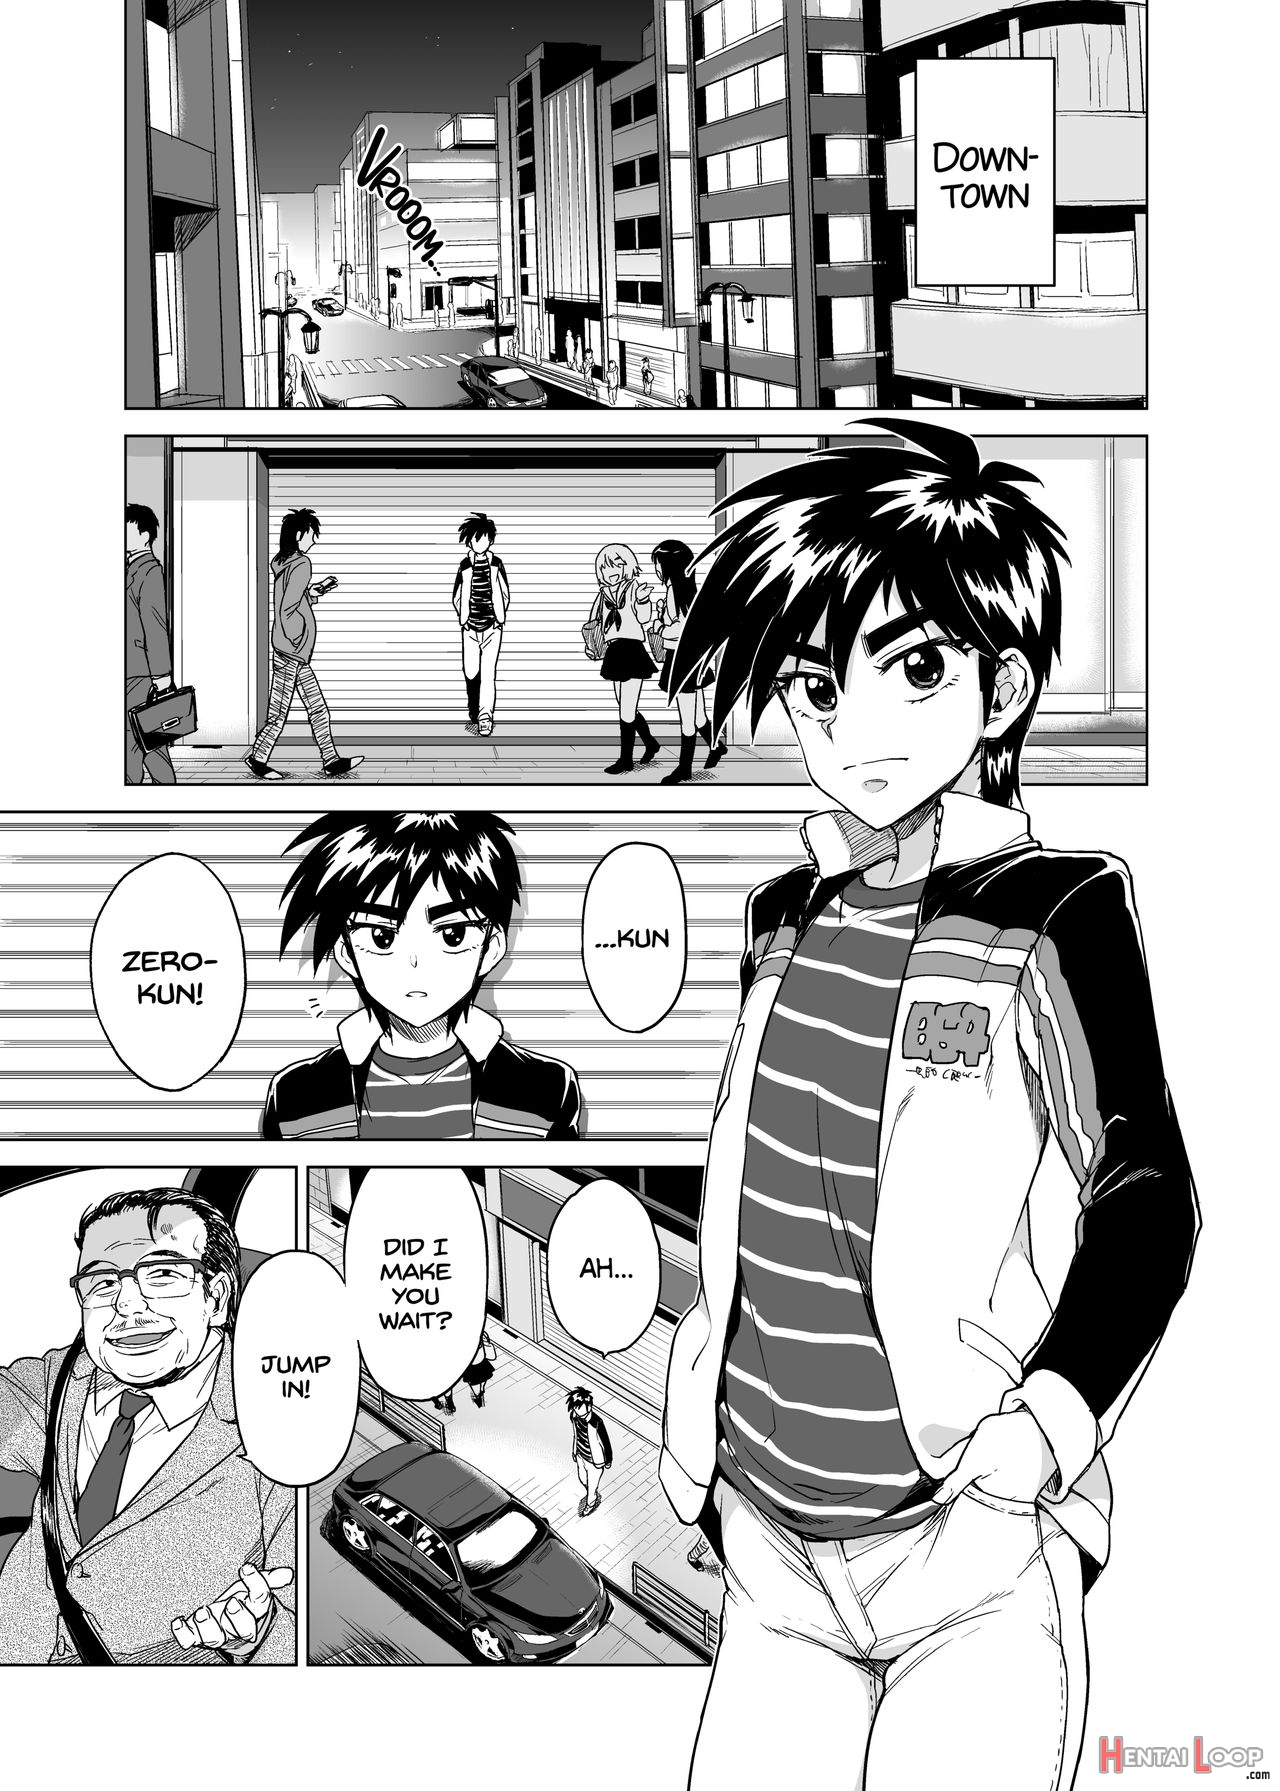 Timezero-kun's Secret First Time page 4